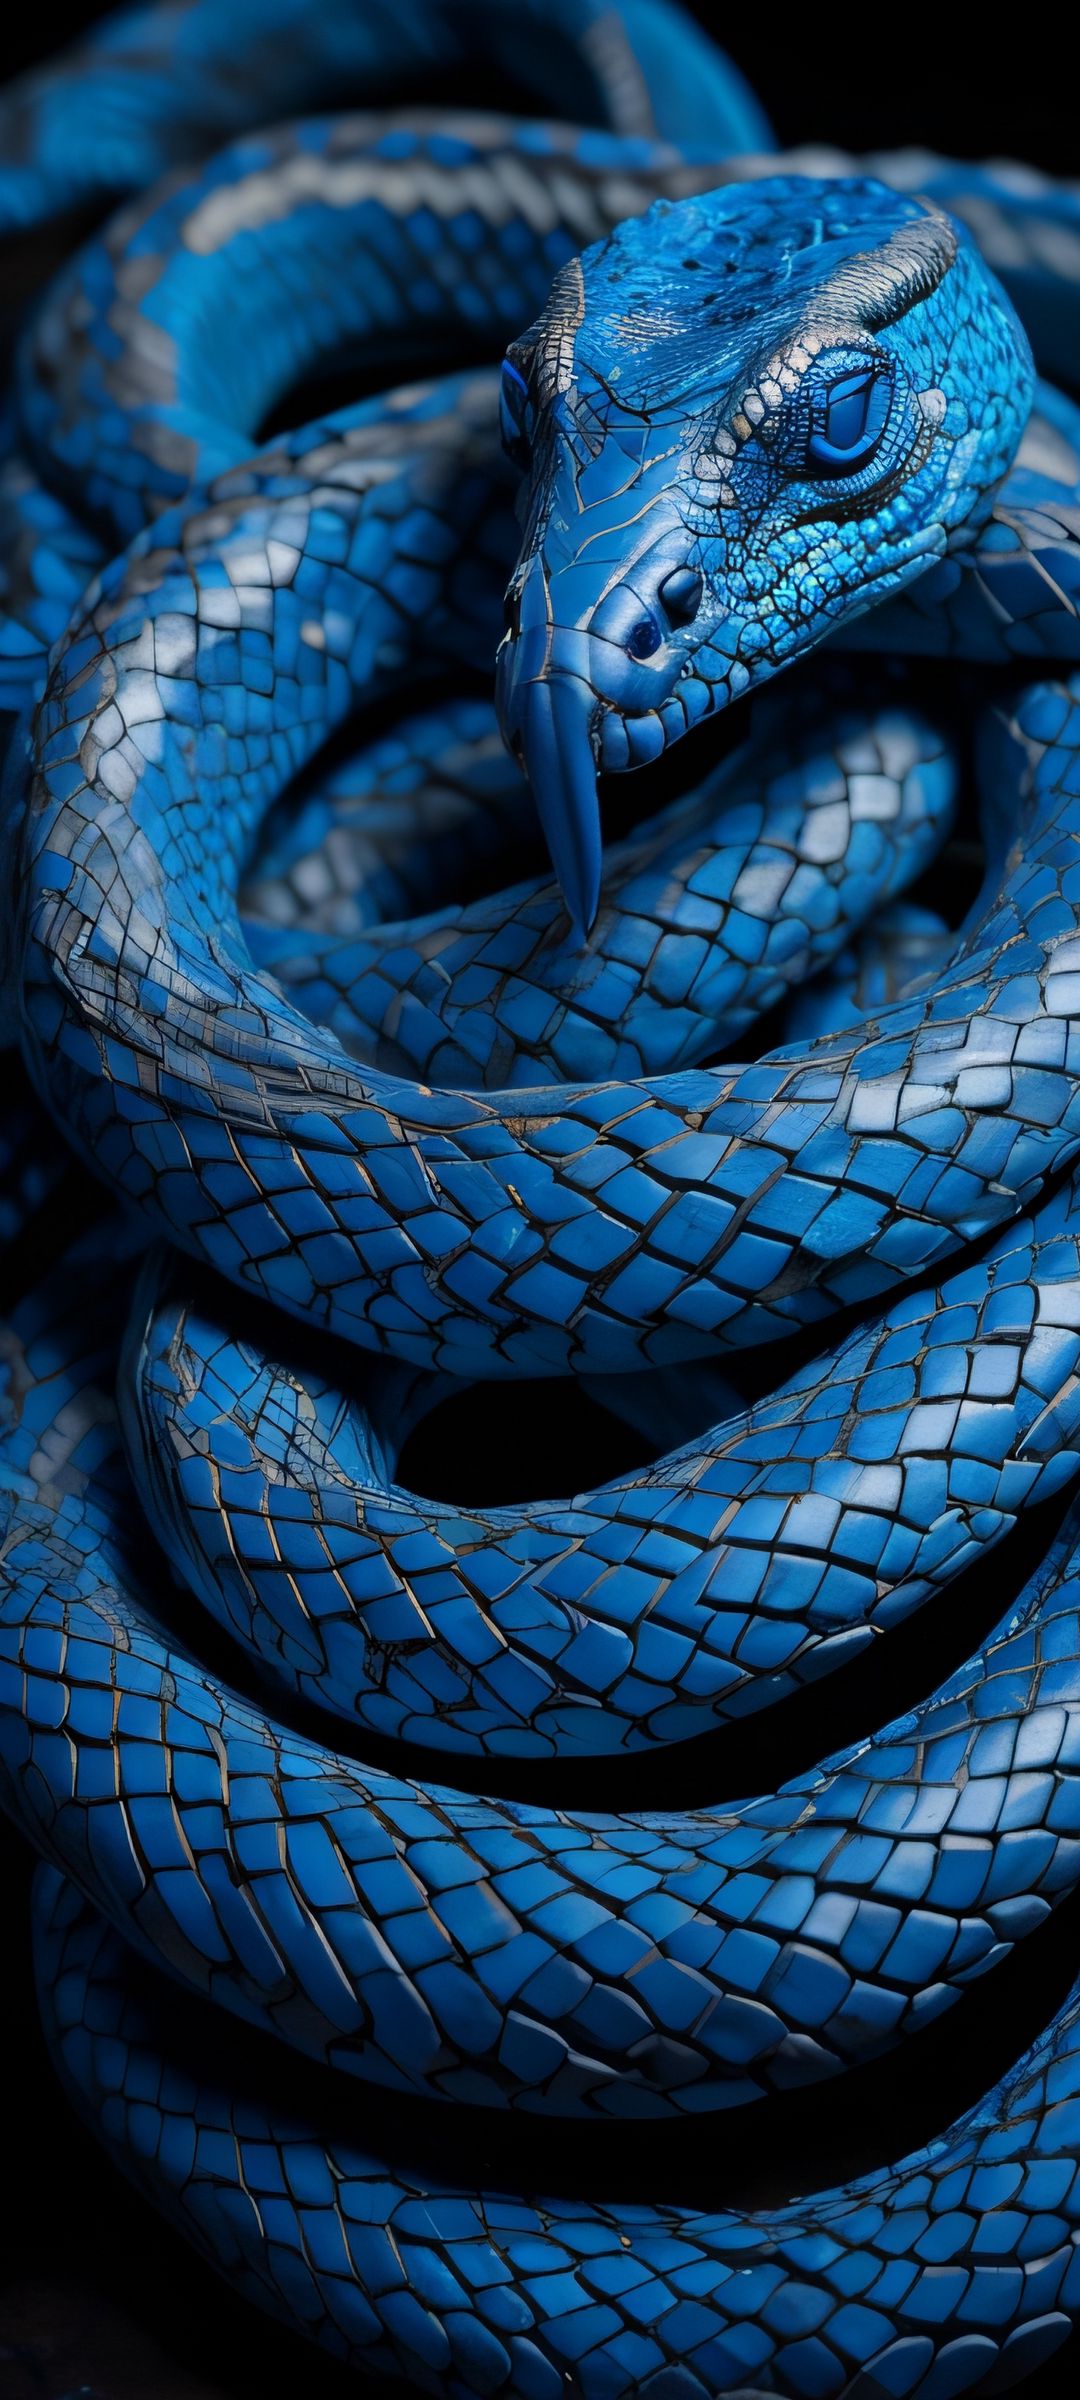 Blue Snake Pictures  Download Free Images on Unsplash